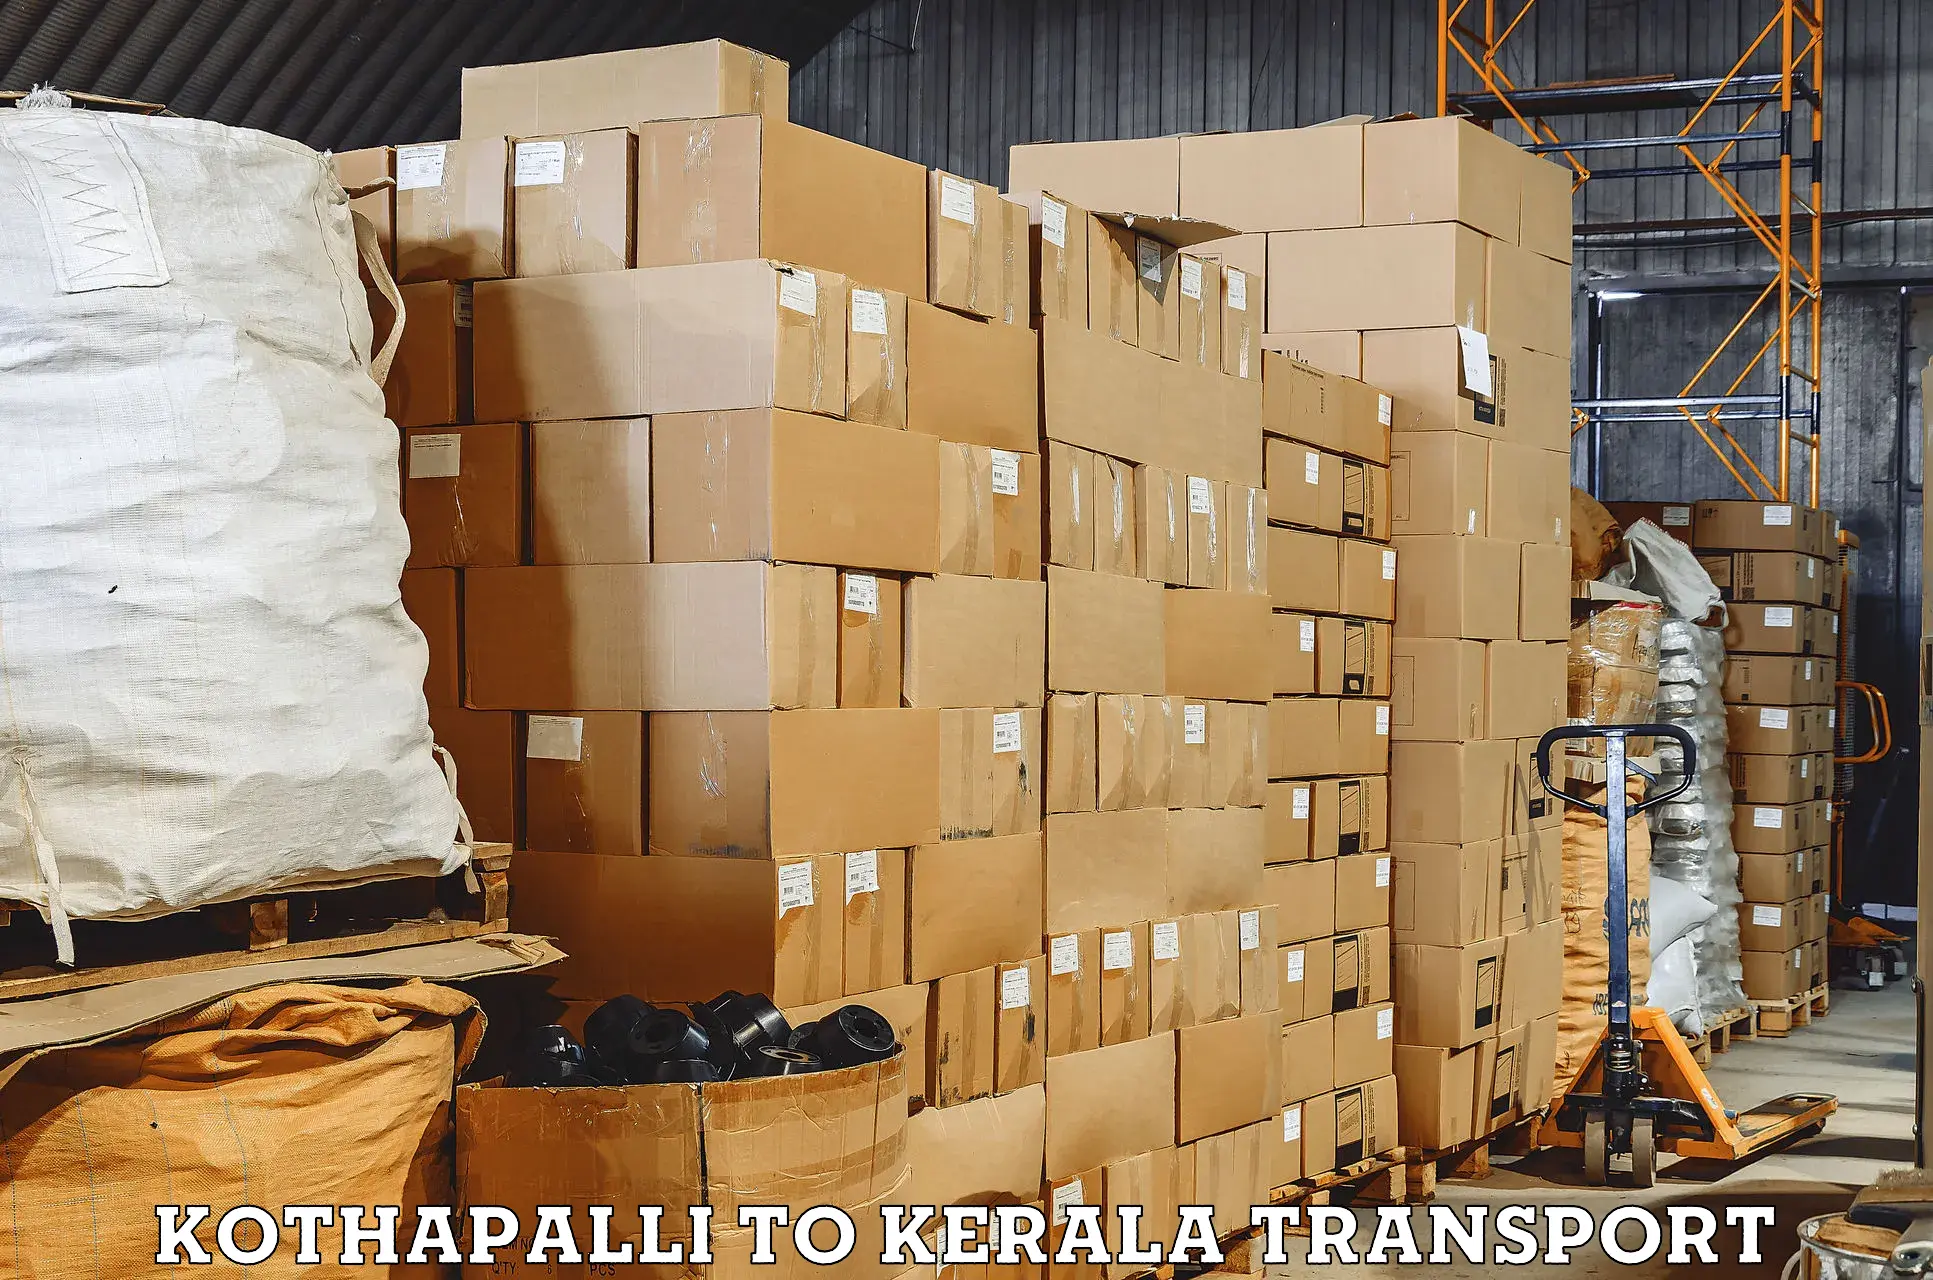 Pick up transport service Kothapalli to Changanacherry